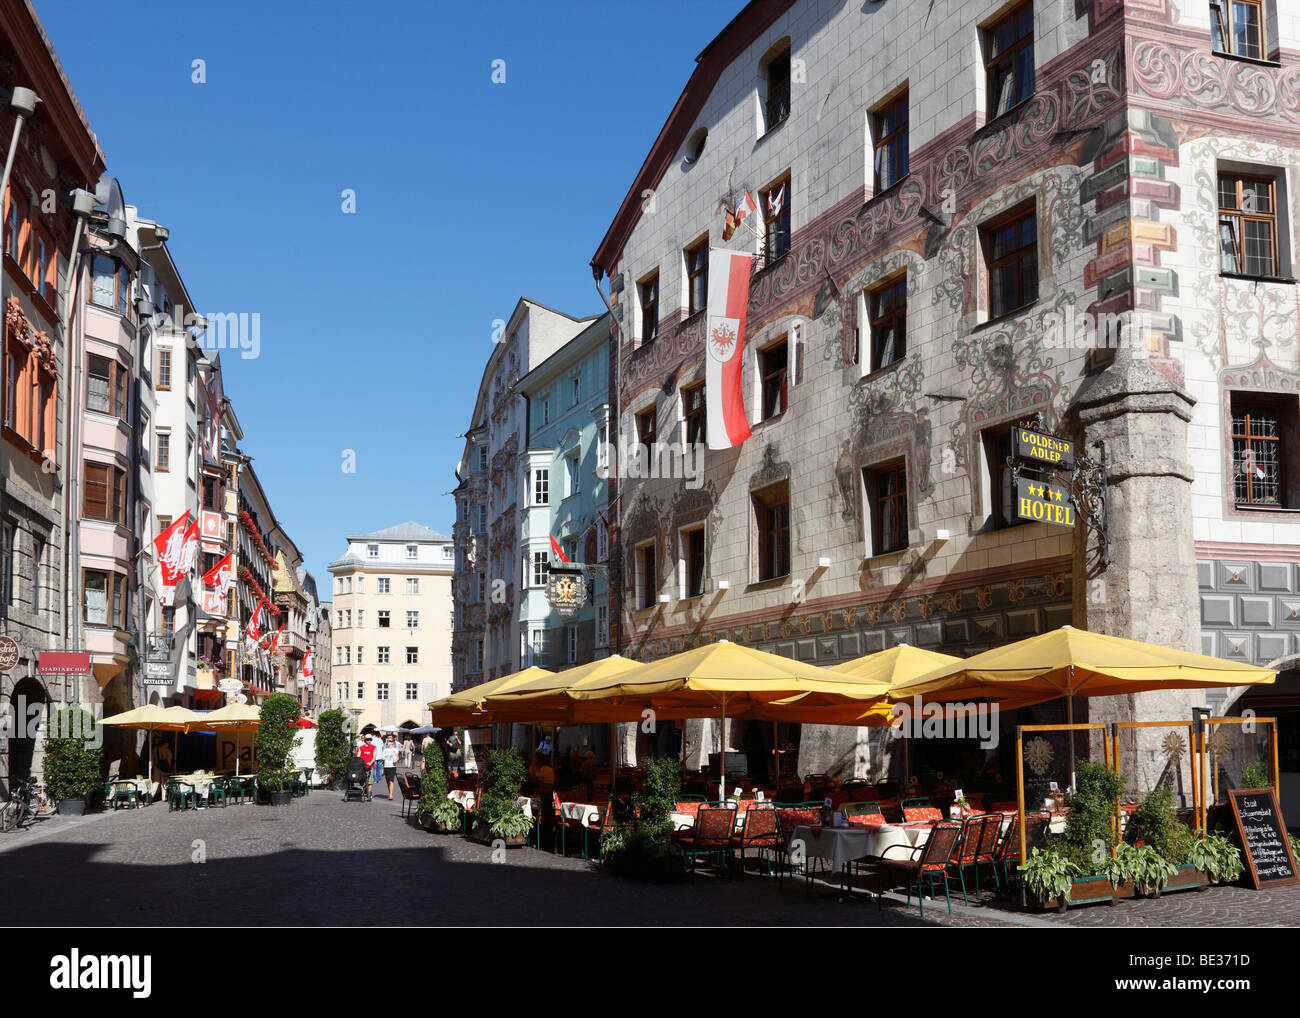 Herzog-Friedrich-Strasse, Hotel Goldener Adler, historic city centre of Innsbruck, Tyrol, Austria, Europe Stock Photo